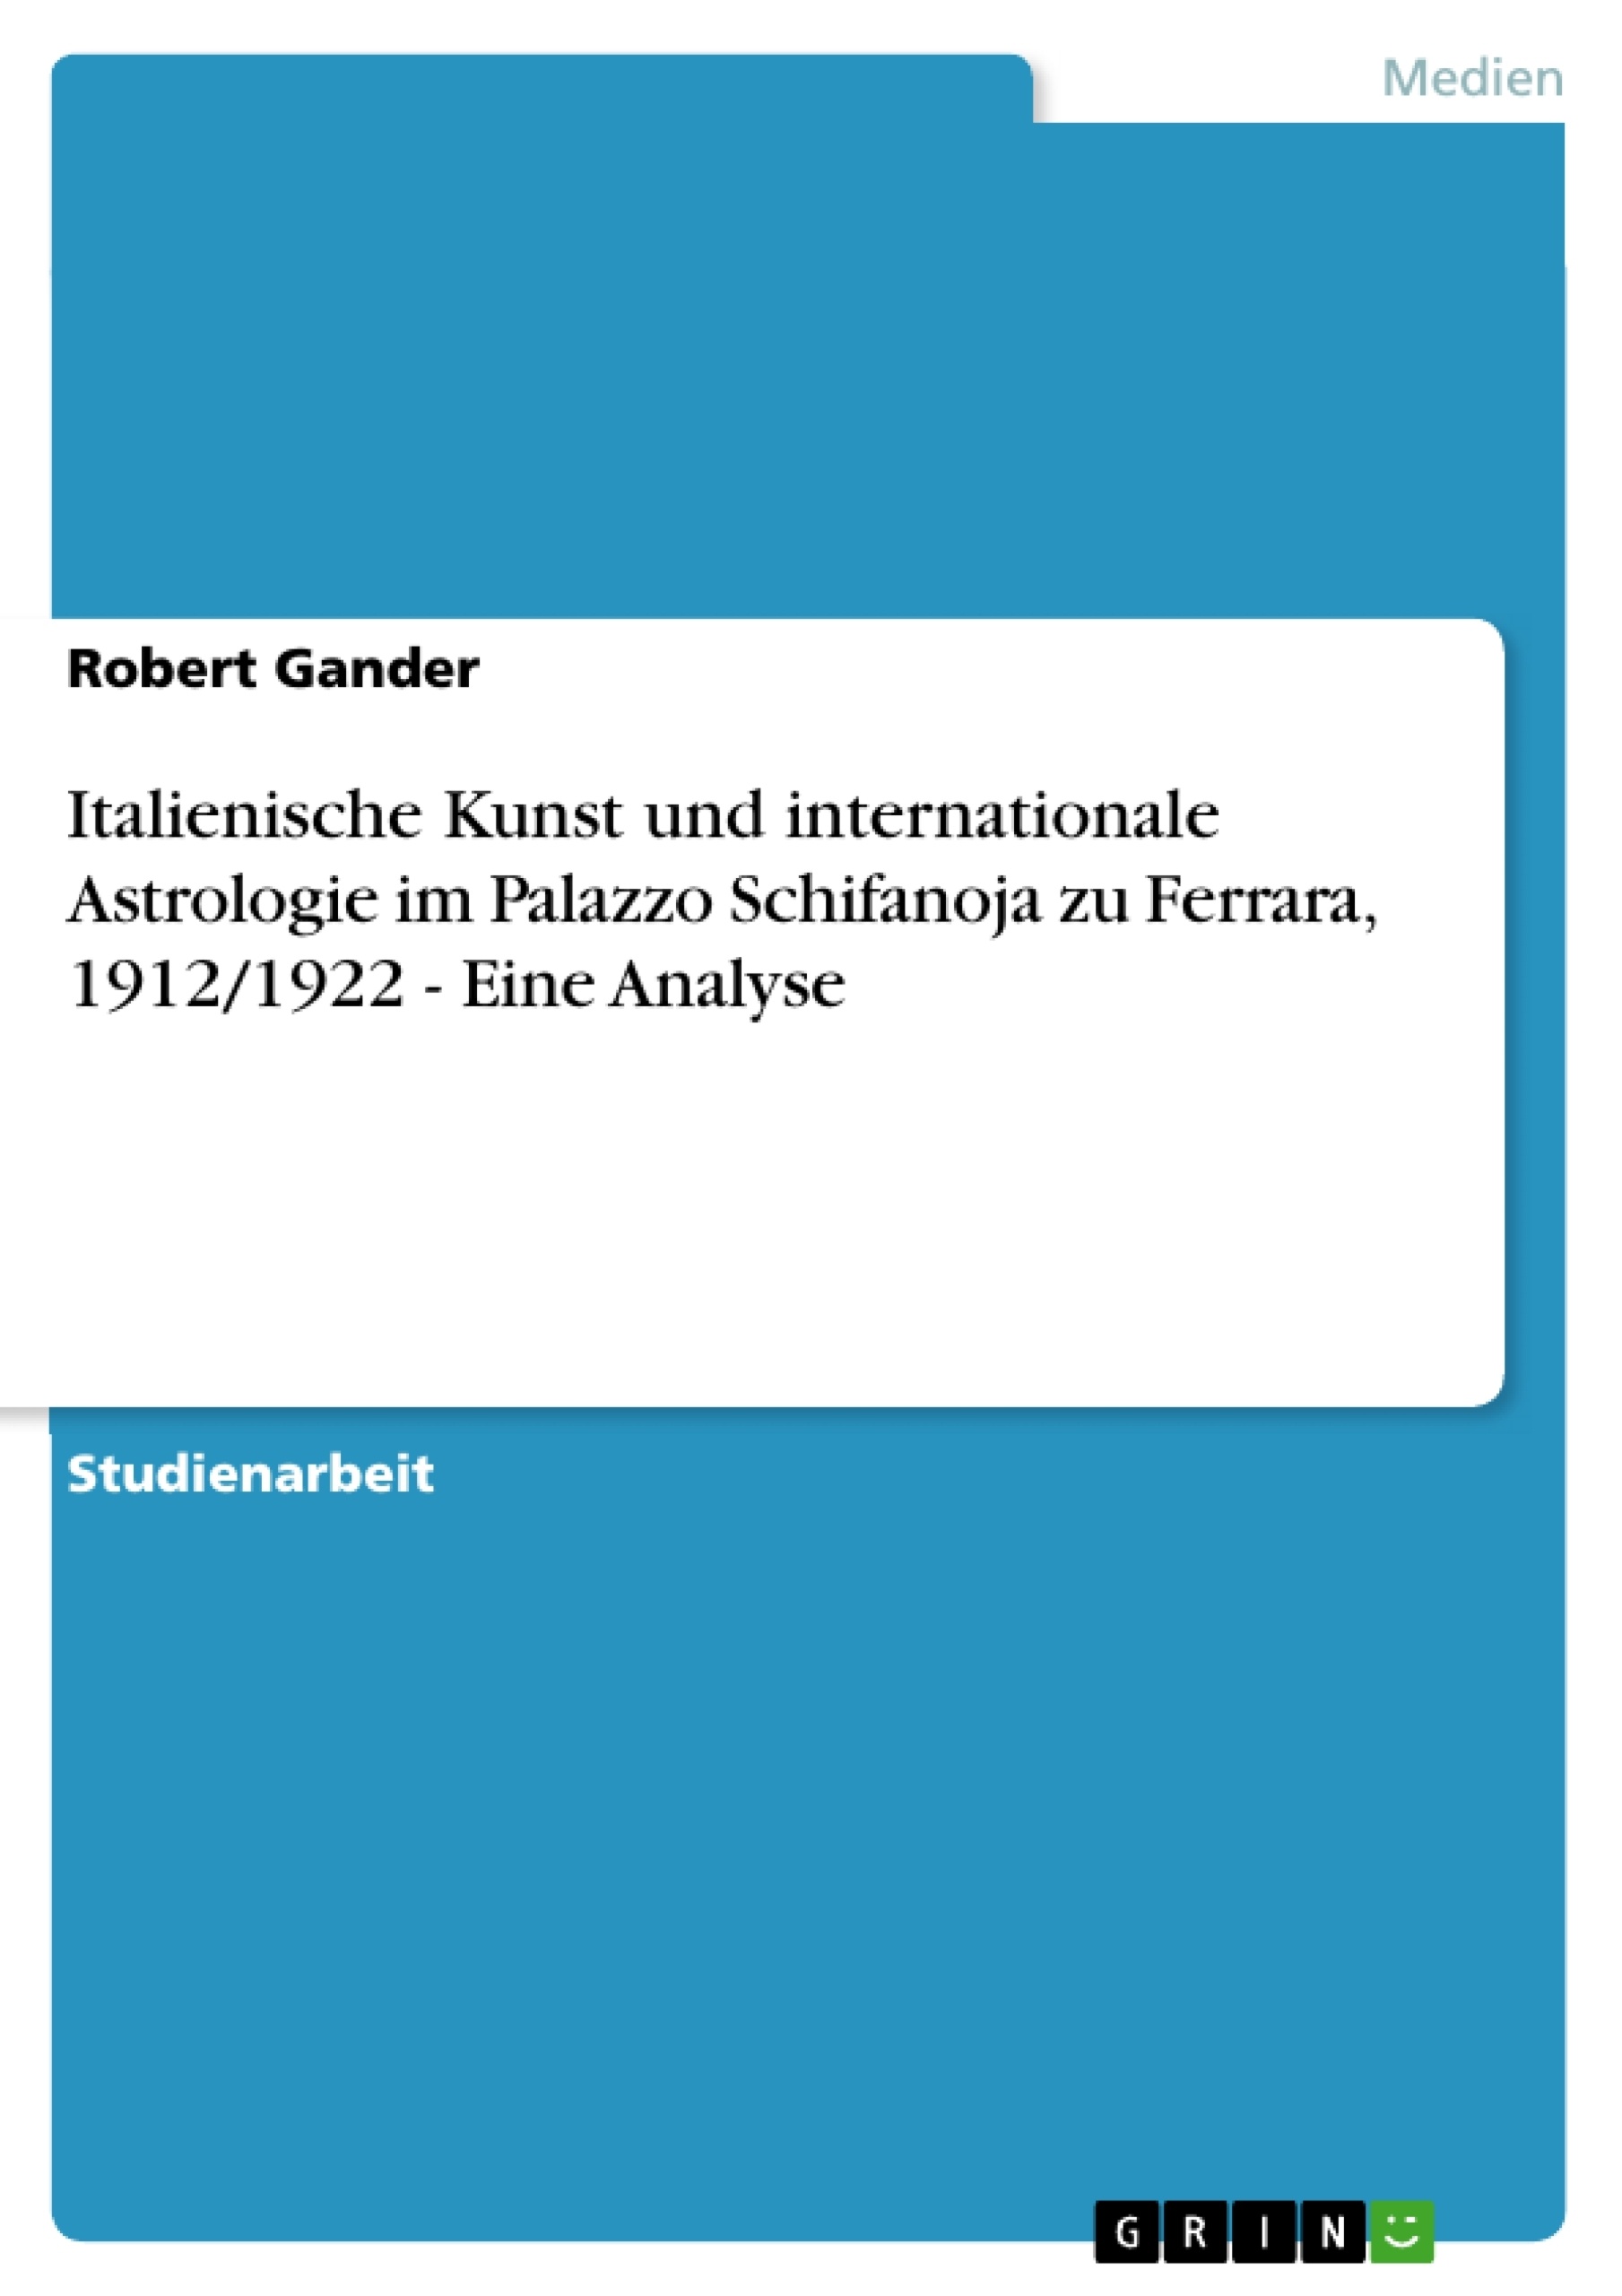 Título: Italienische Kunst und internationale Astrologie im Palazzo Schifanoja zu Ferrara, 1912/1922 - Eine Analyse